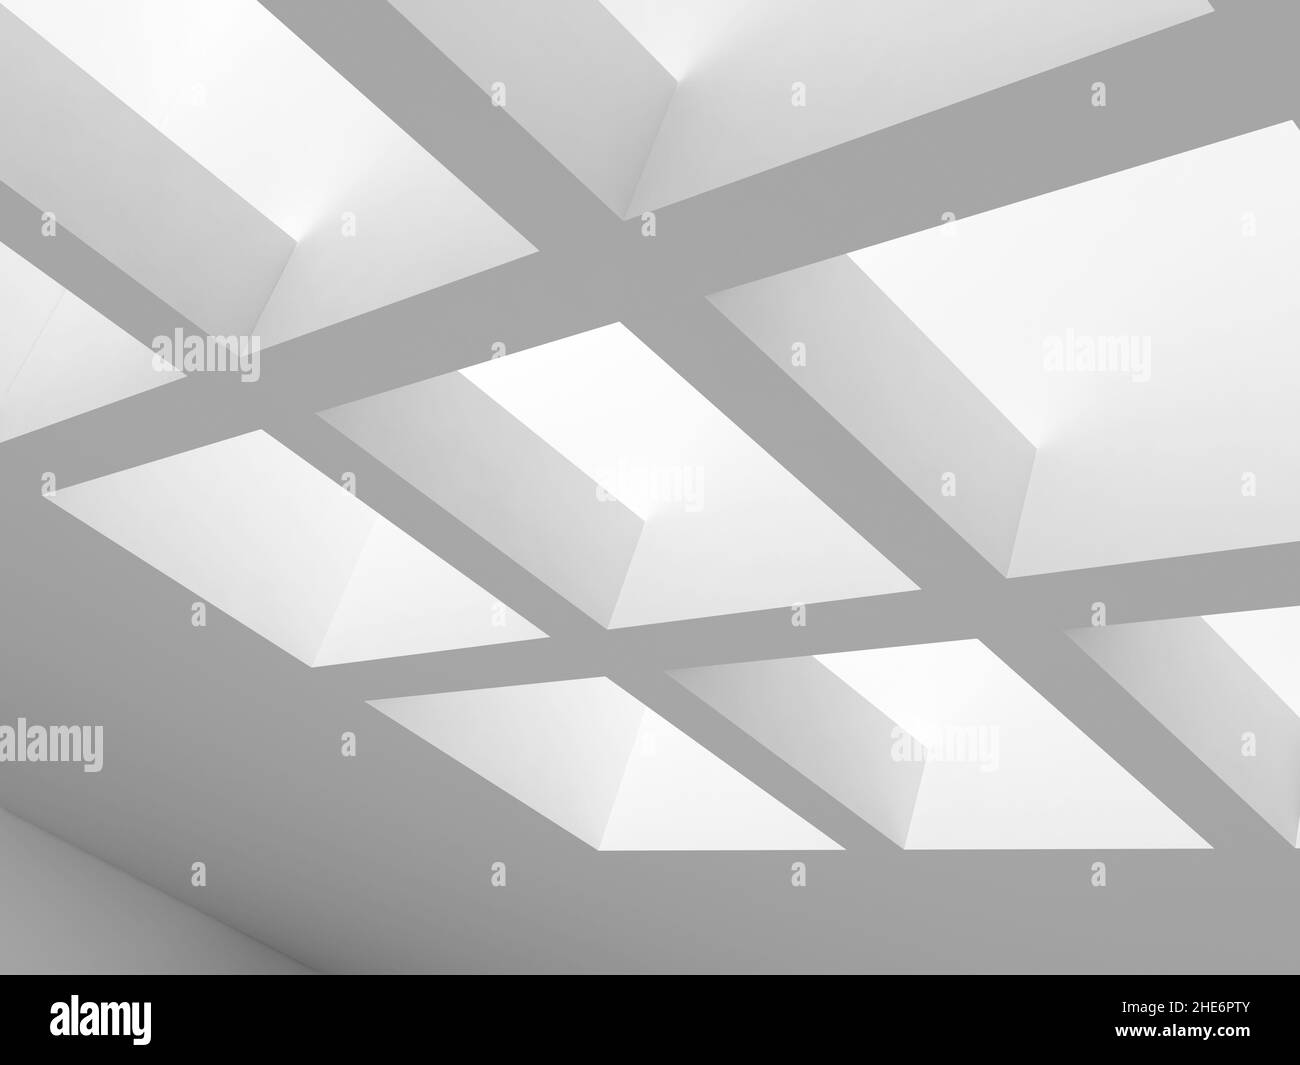 Abstrakter minimaler architektonischer Hintergrund. Weiße Dachfenster-Designelemente mit weichen Schatten. 3D Rendering-Illustration Stockfoto